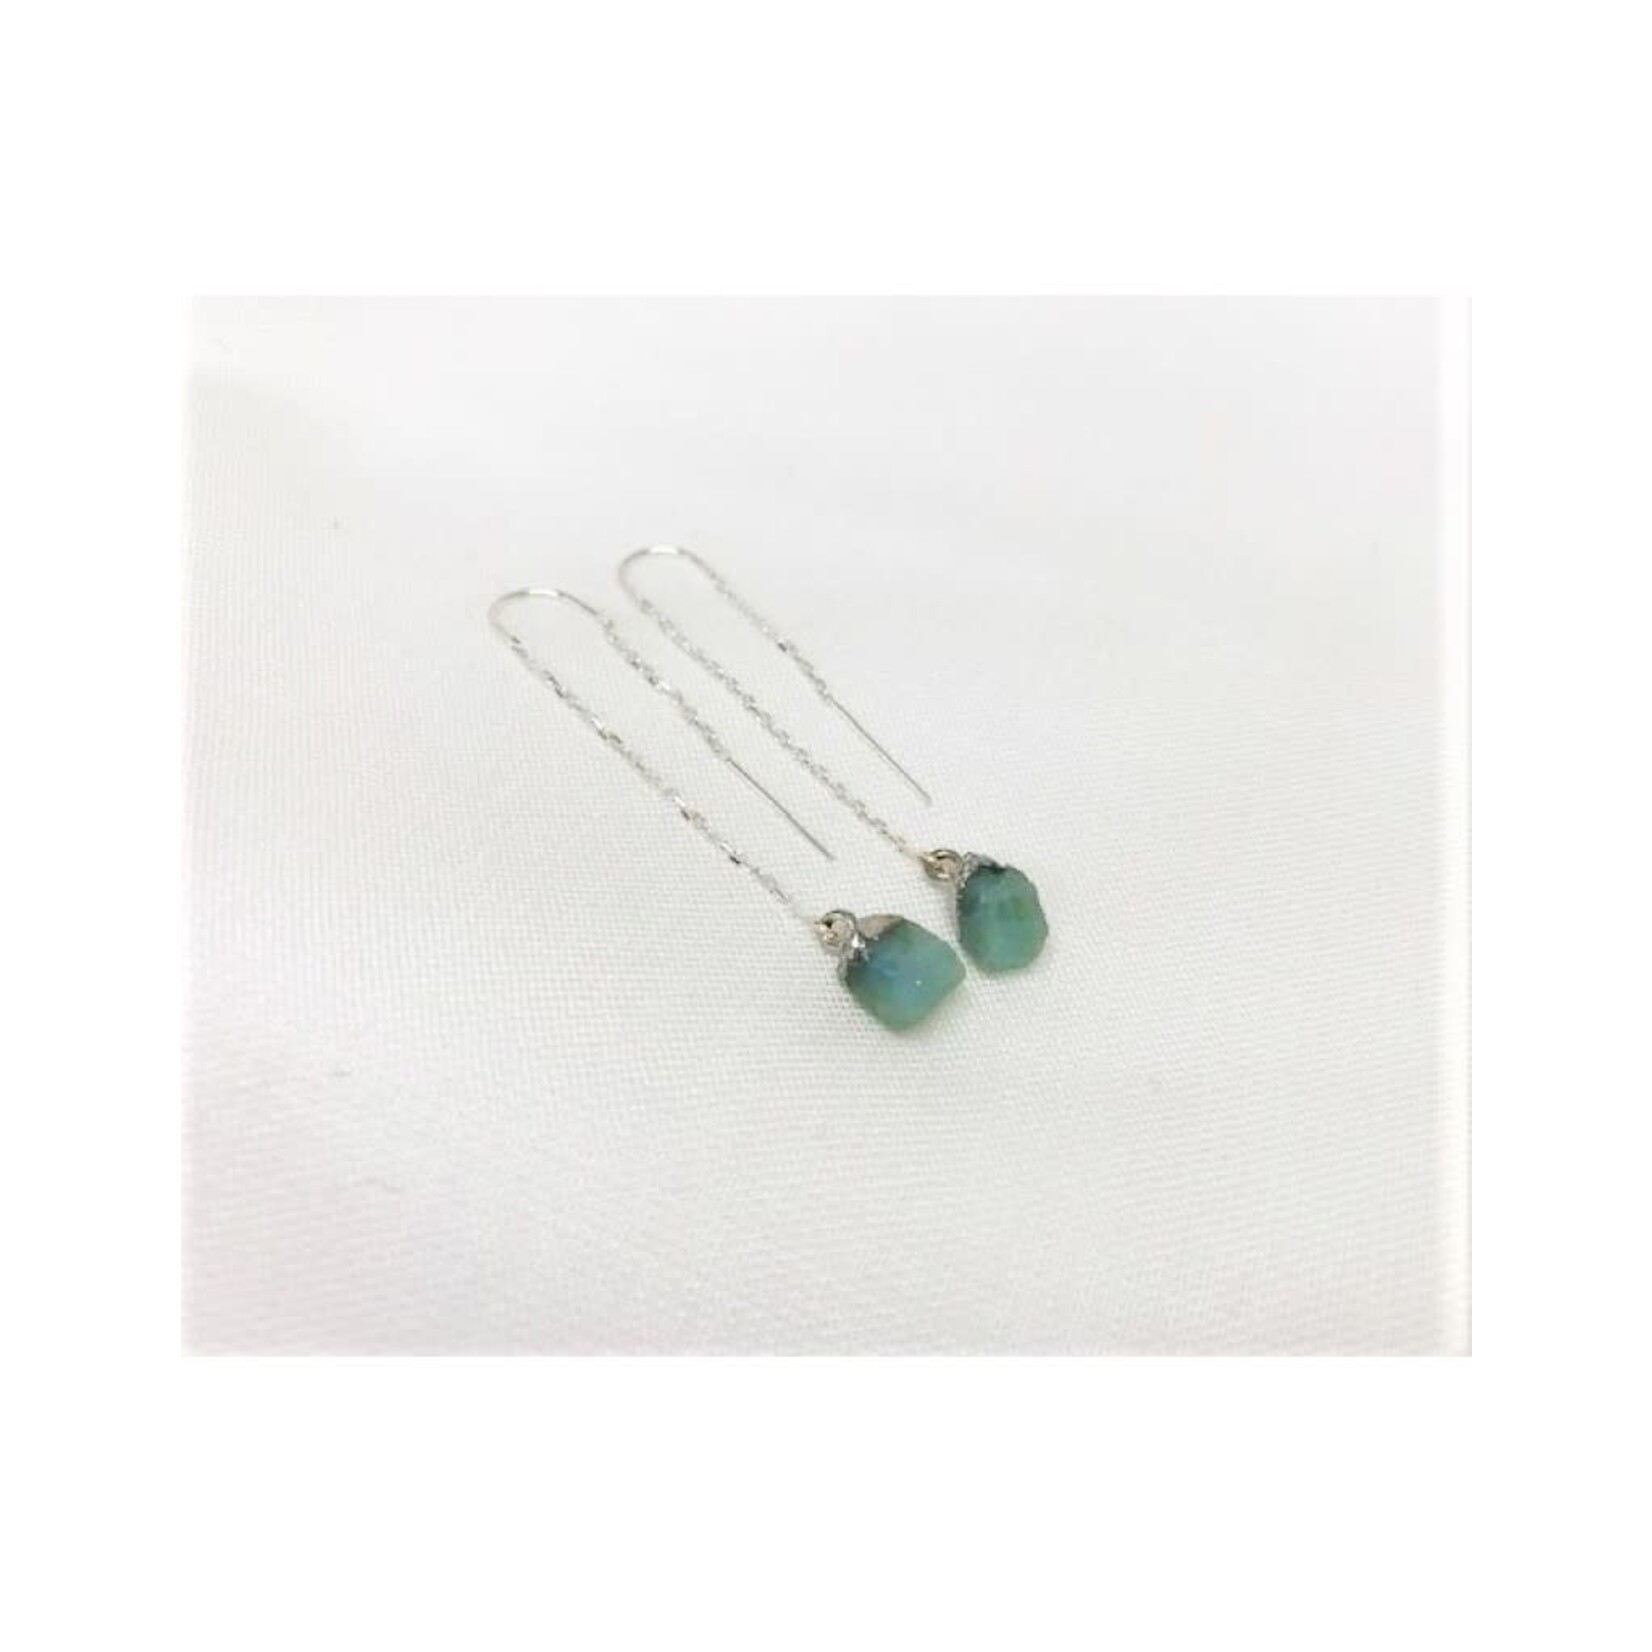 Thread Through Earrings - Aquamarine/Silver